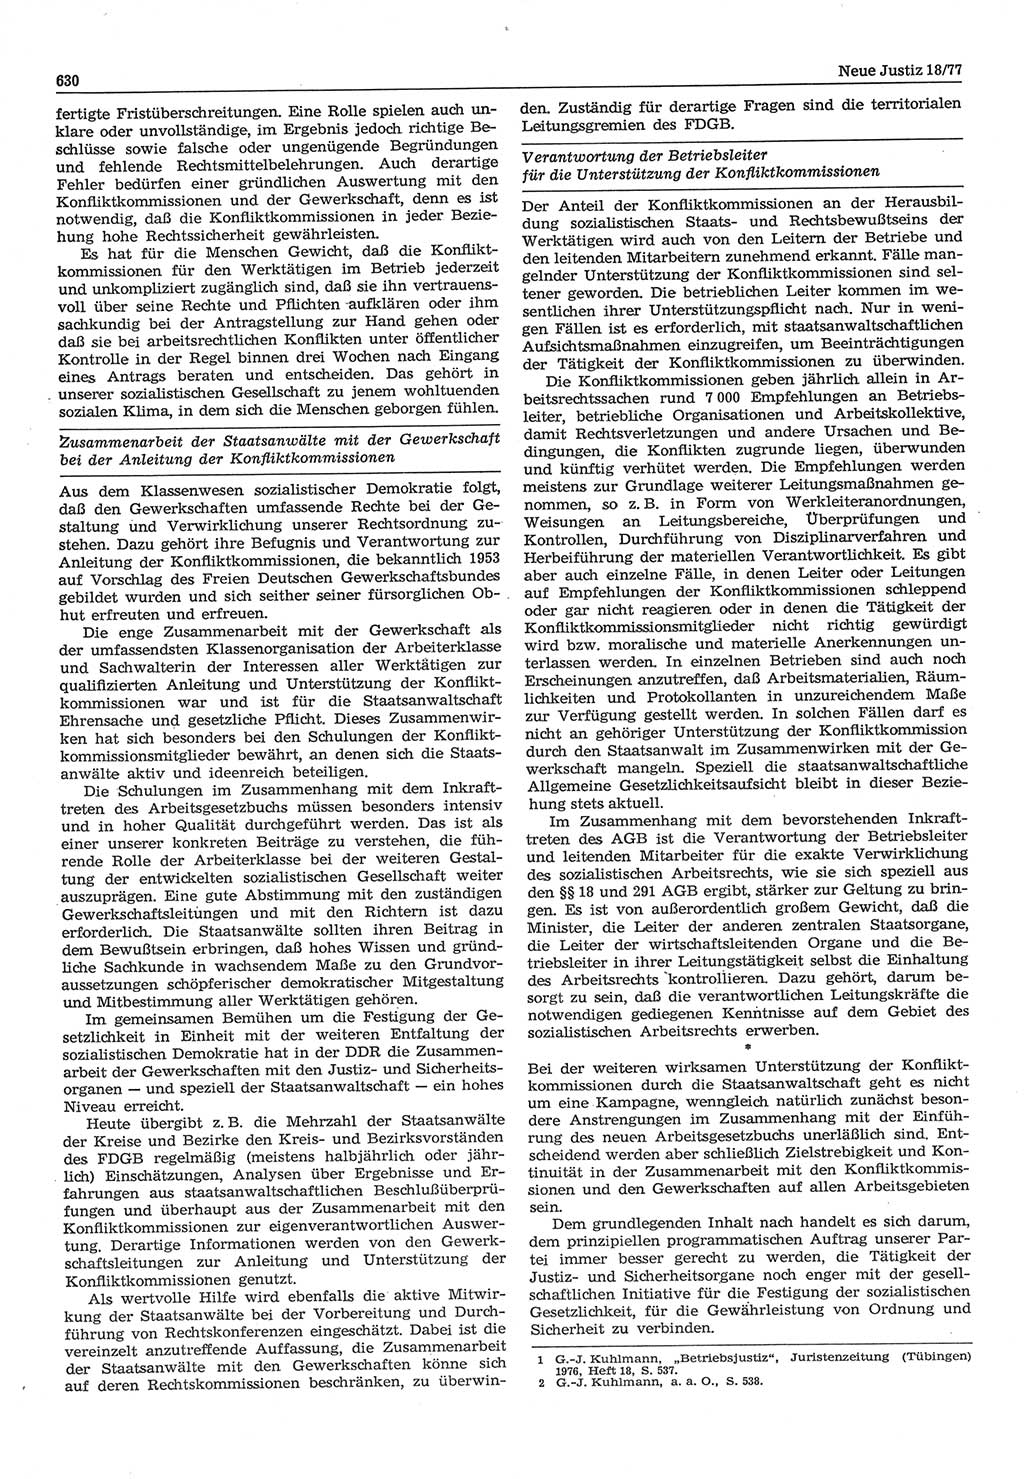 Neue Justiz (NJ), Zeitschrift für Recht und Rechtswissenschaft-Zeitschrift, sozialistisches Recht und Gesetzlichkeit, 31. Jahrgang 1977, Seite 630 (NJ DDR 1977, S. 630)